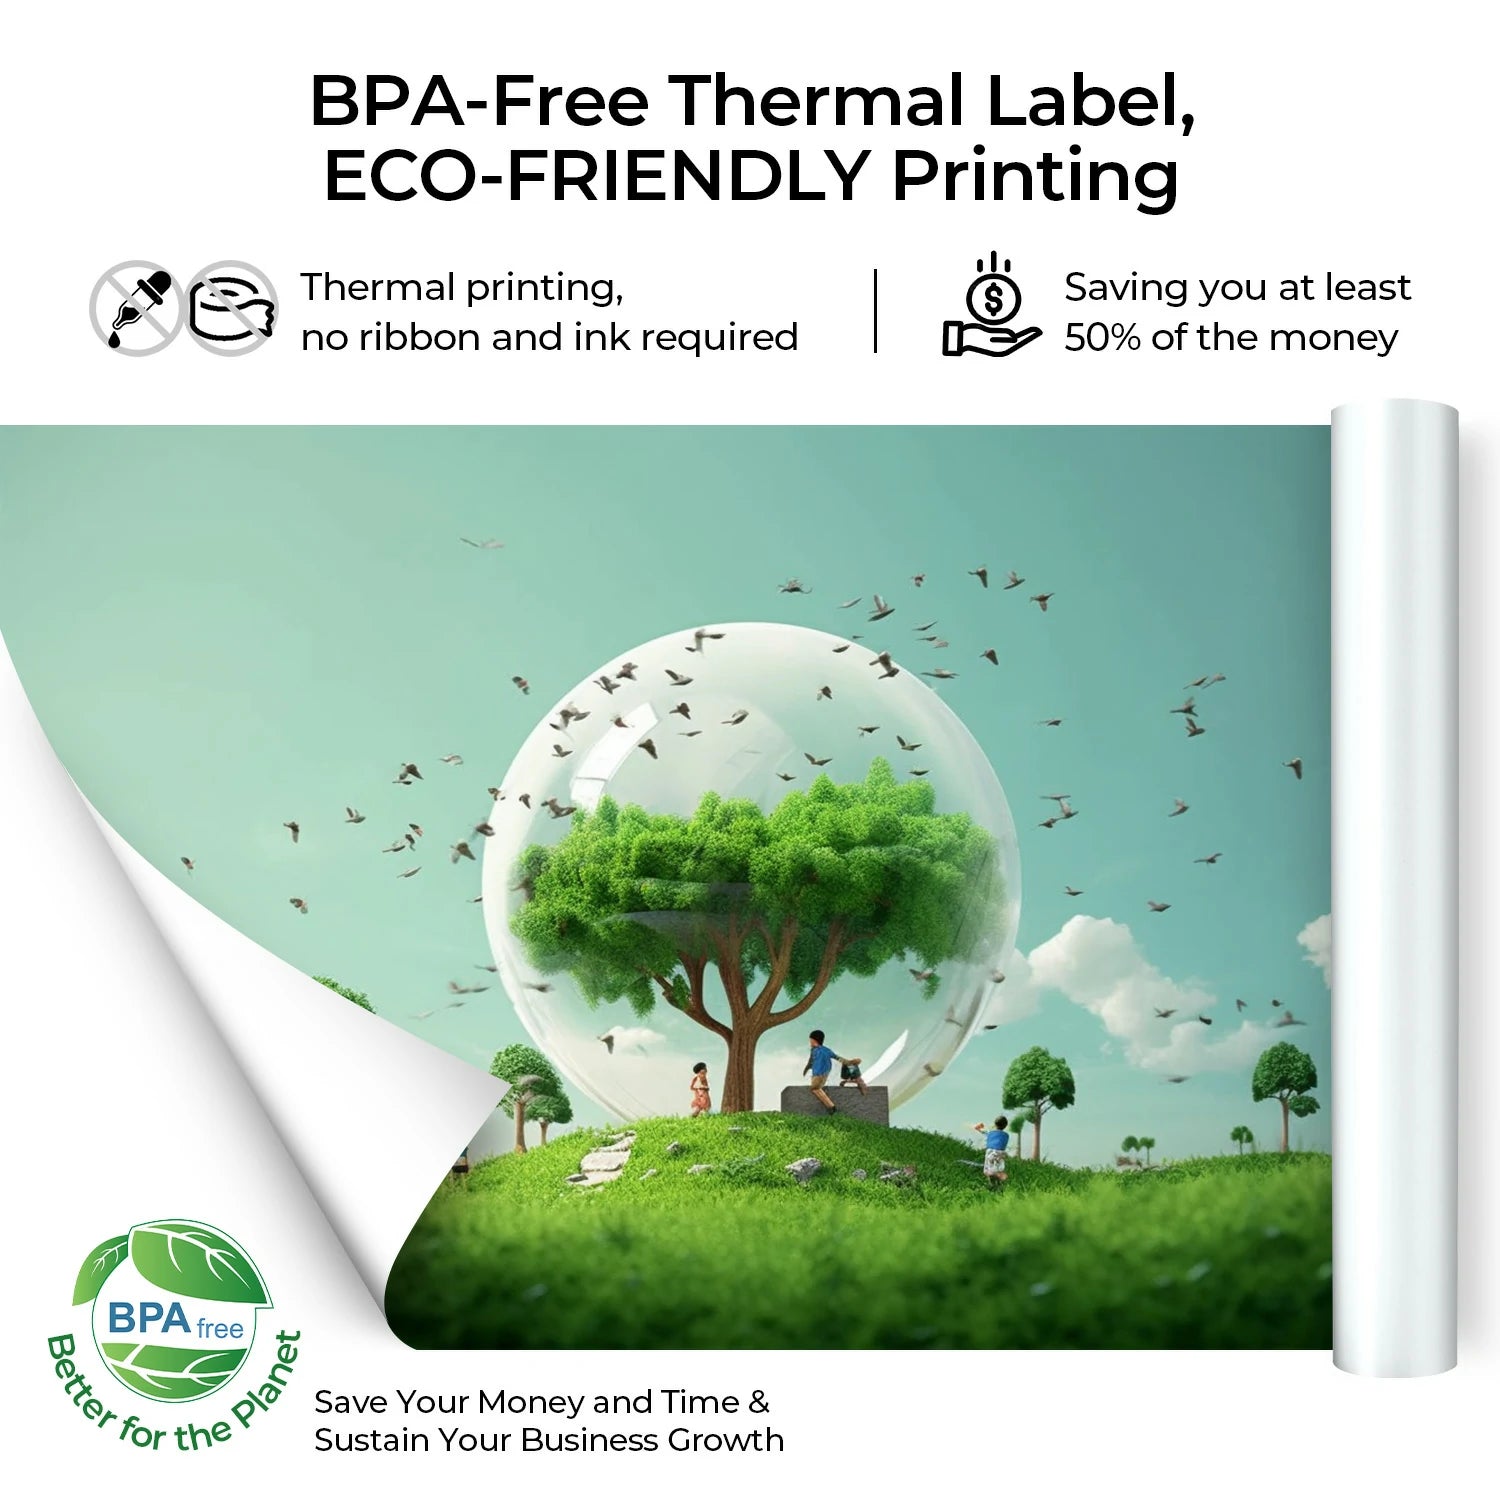 Umweltfreundlich hergestellt, ist unser A4-Thermopapier frei von BPA und BPS.